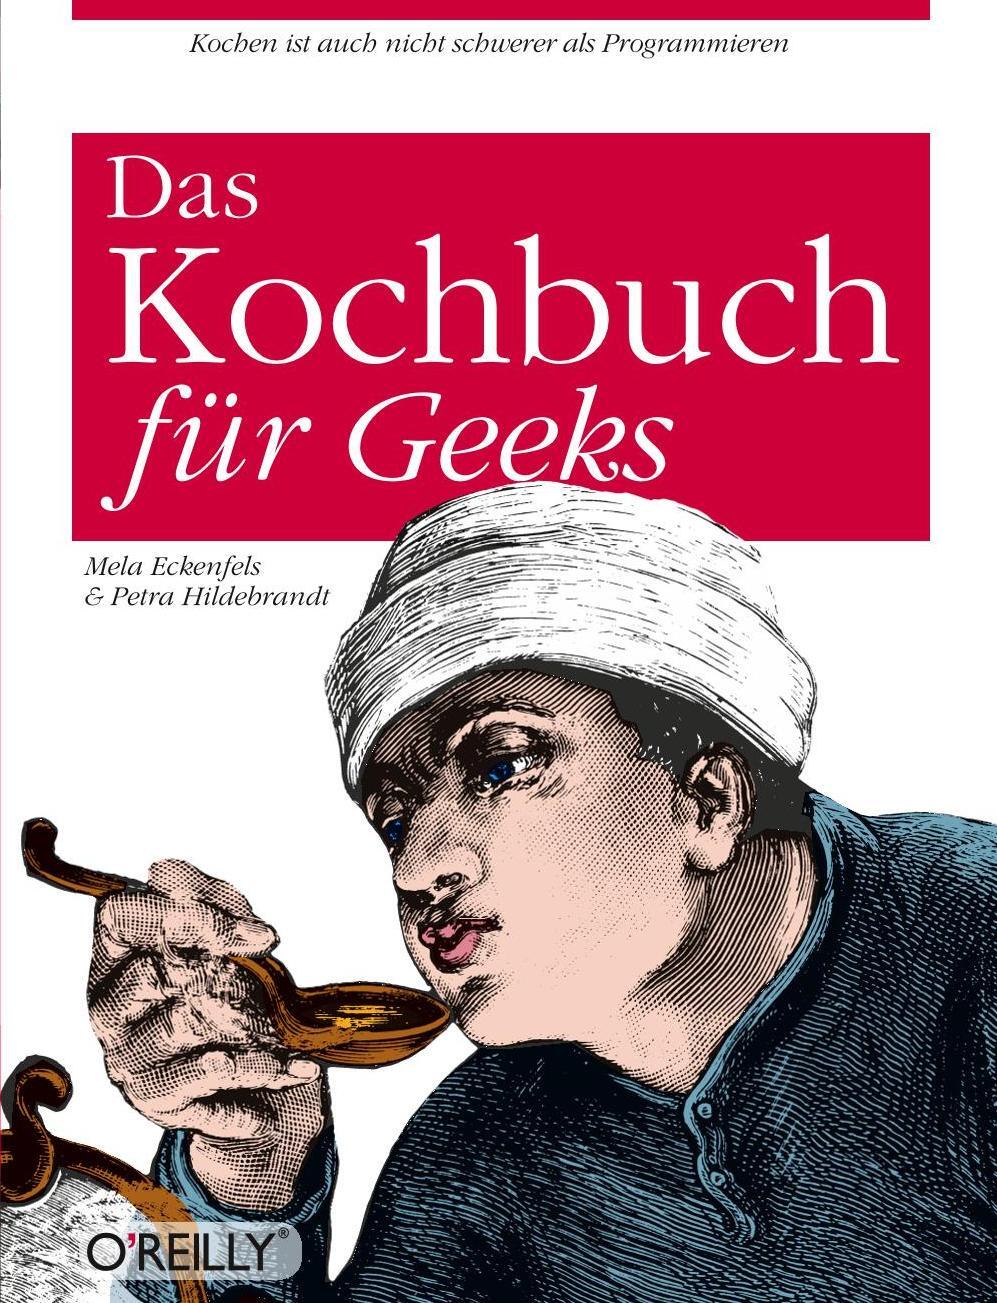 Eckenfels/Hildebrandt - Das Kochbuch für Geeks